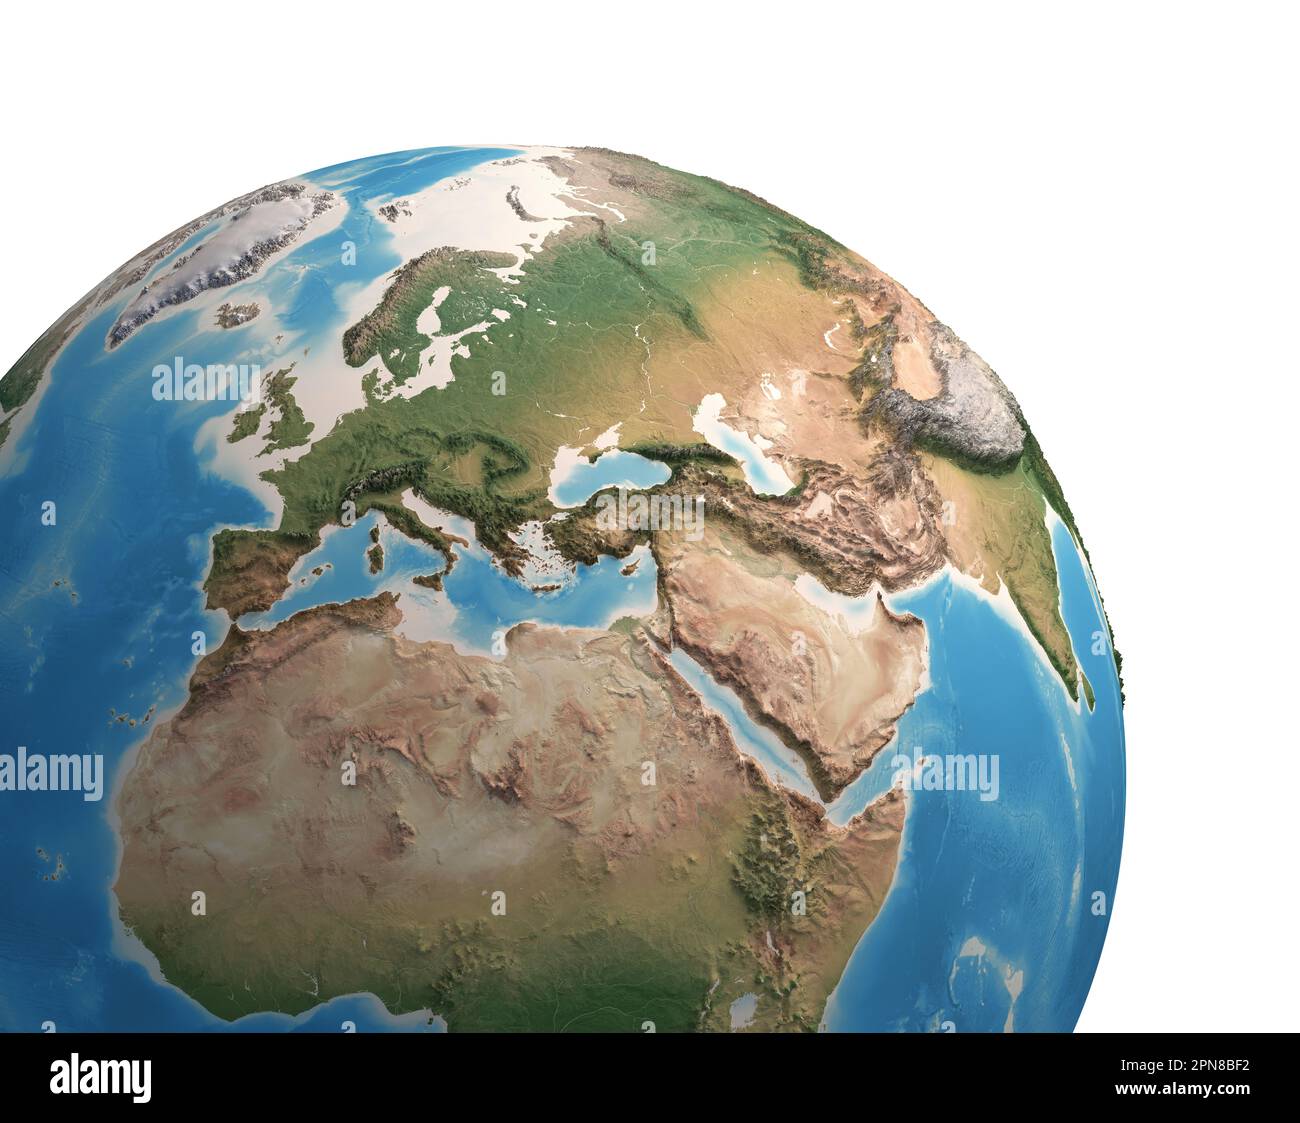 Vue satellite haute résolution de la planète Terre, axée sur l'Europe, l'Eurasie, le Moyen-Orient, l'Afrique du Nord - éléments de cette image fournis par la NASA Banque D'Images